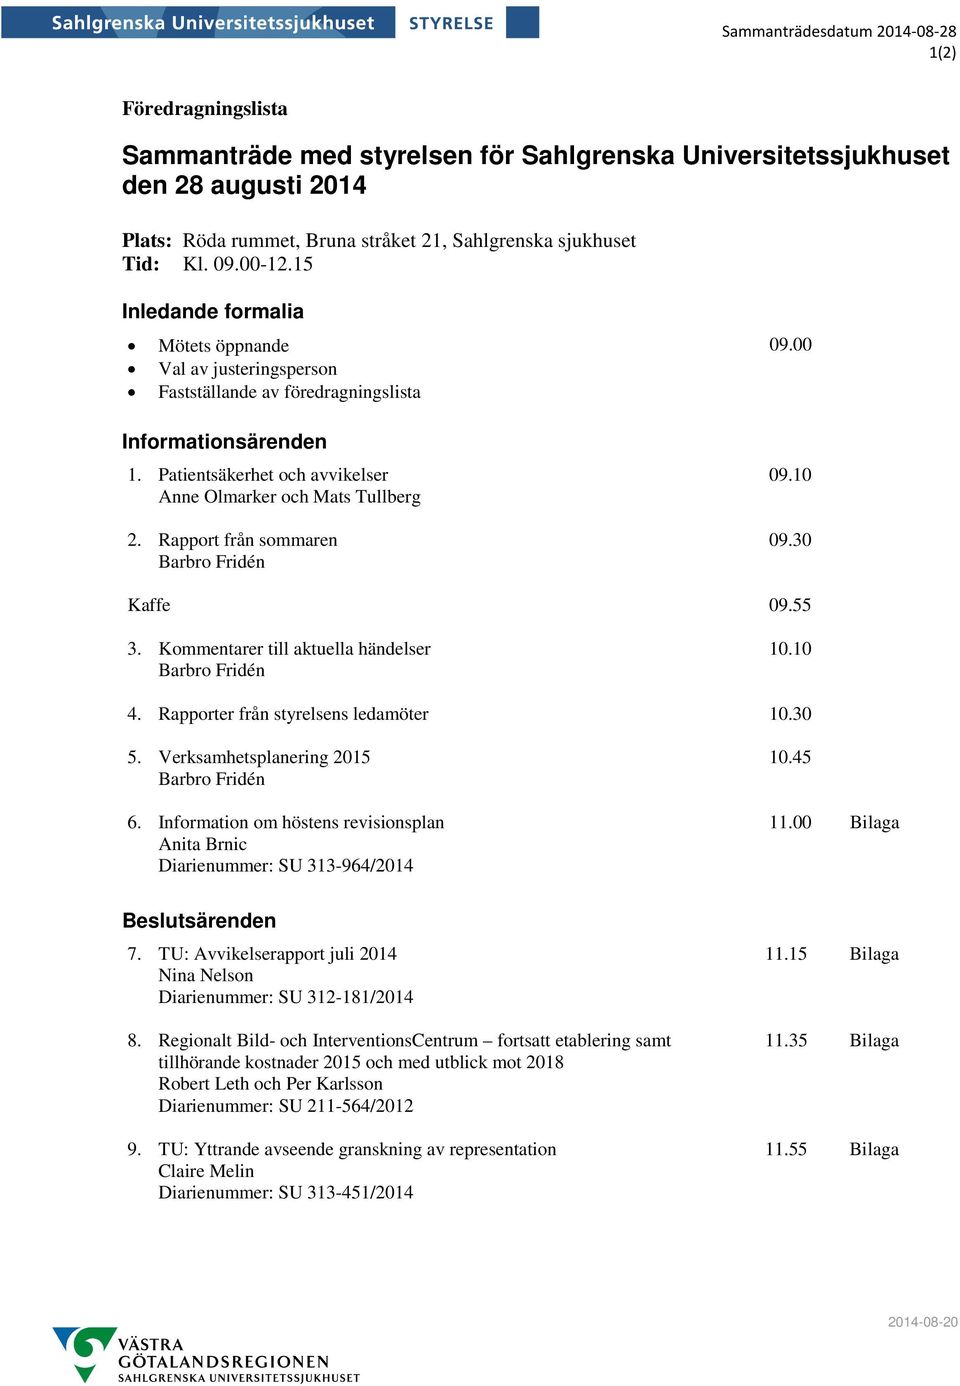 Patientsäkerhet och avvikelser Anne Olmarker och Mats Tullberg 2. Rapport från sommaren Barbro Fridén 09.10 09.30 Kaffe 09.55 3. Kommentarer till aktuella händelser Barbro Fridén 10.10 4.